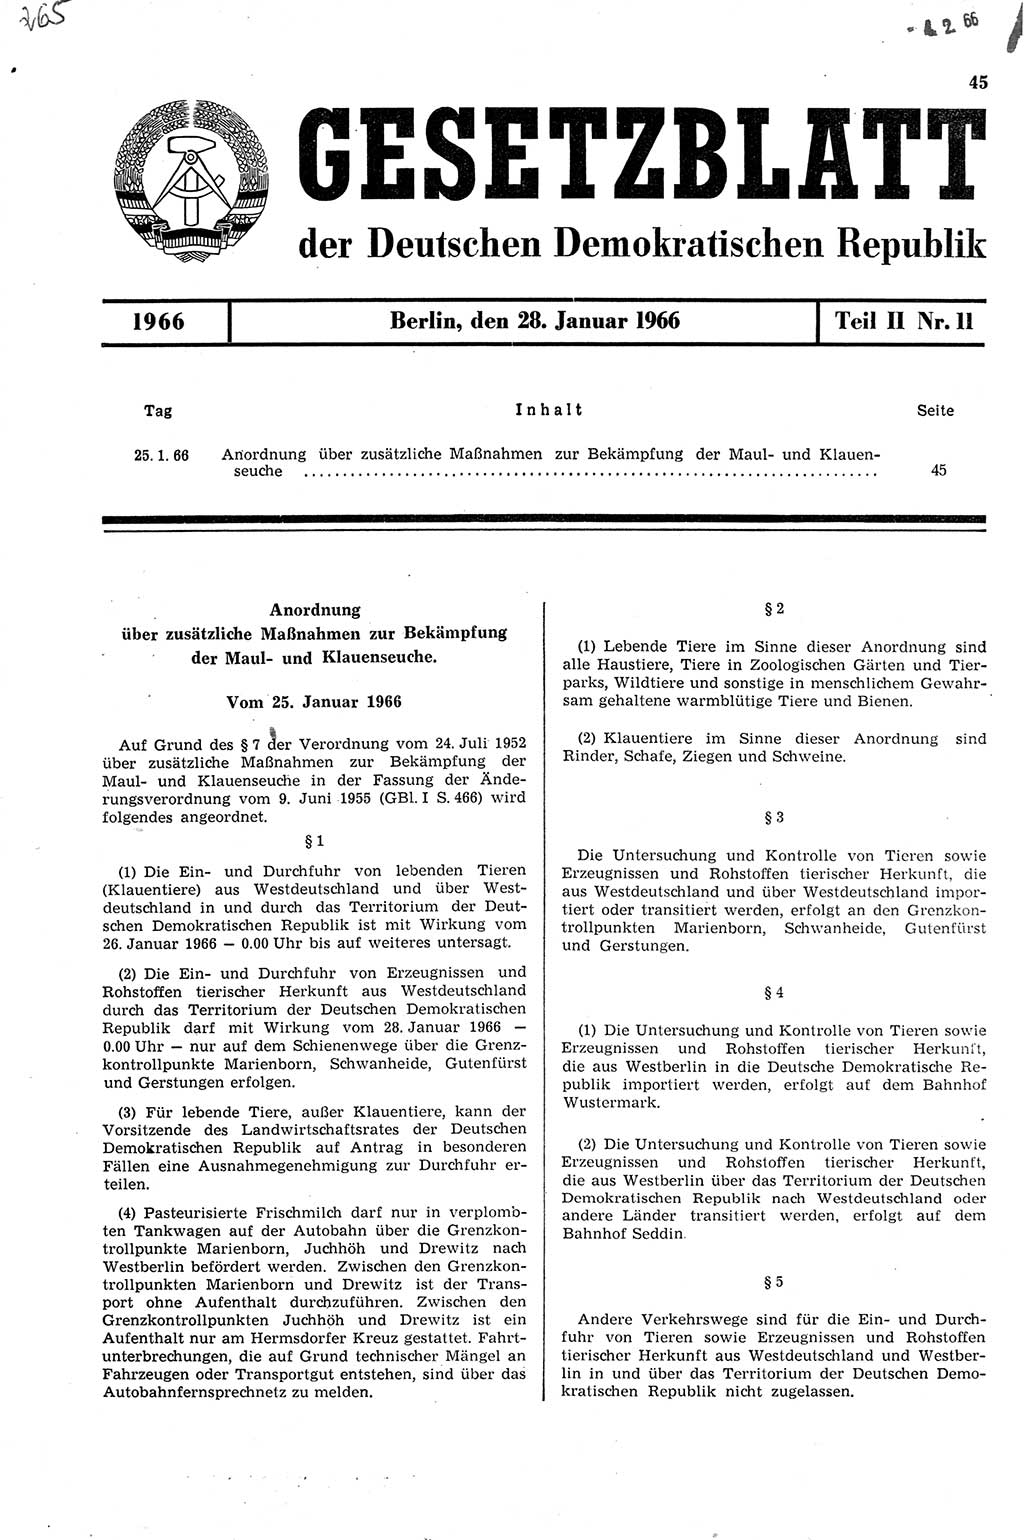 Gesetzblatt (GBl.) der Deutschen Demokratischen Republik (DDR) Teil ⅠⅠ 1966, Seite 45 (GBl. DDR ⅠⅠ 1966, S. 45)